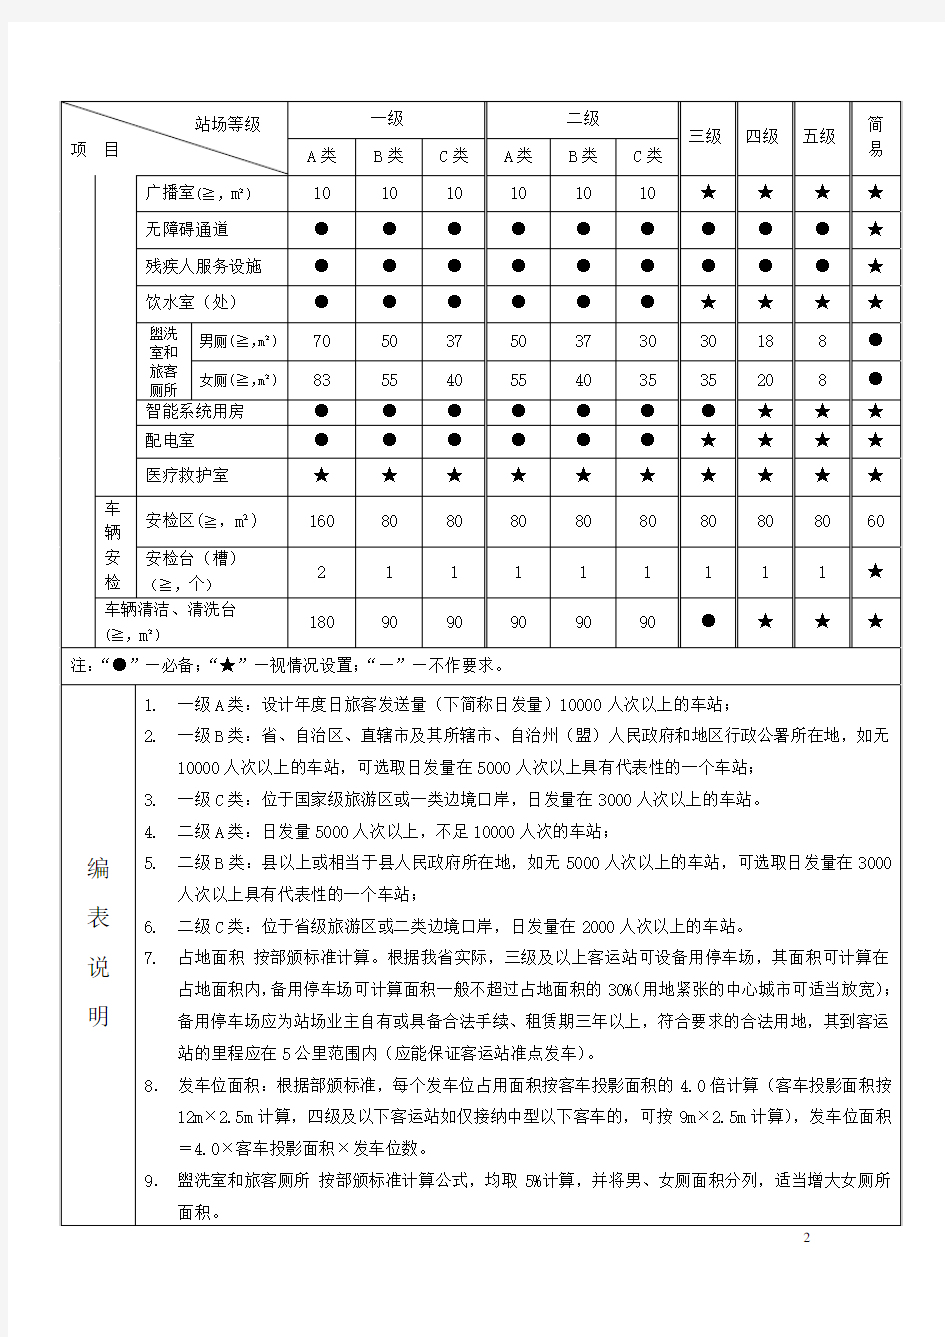 广东省汽车客运站站级验收标准(试行)